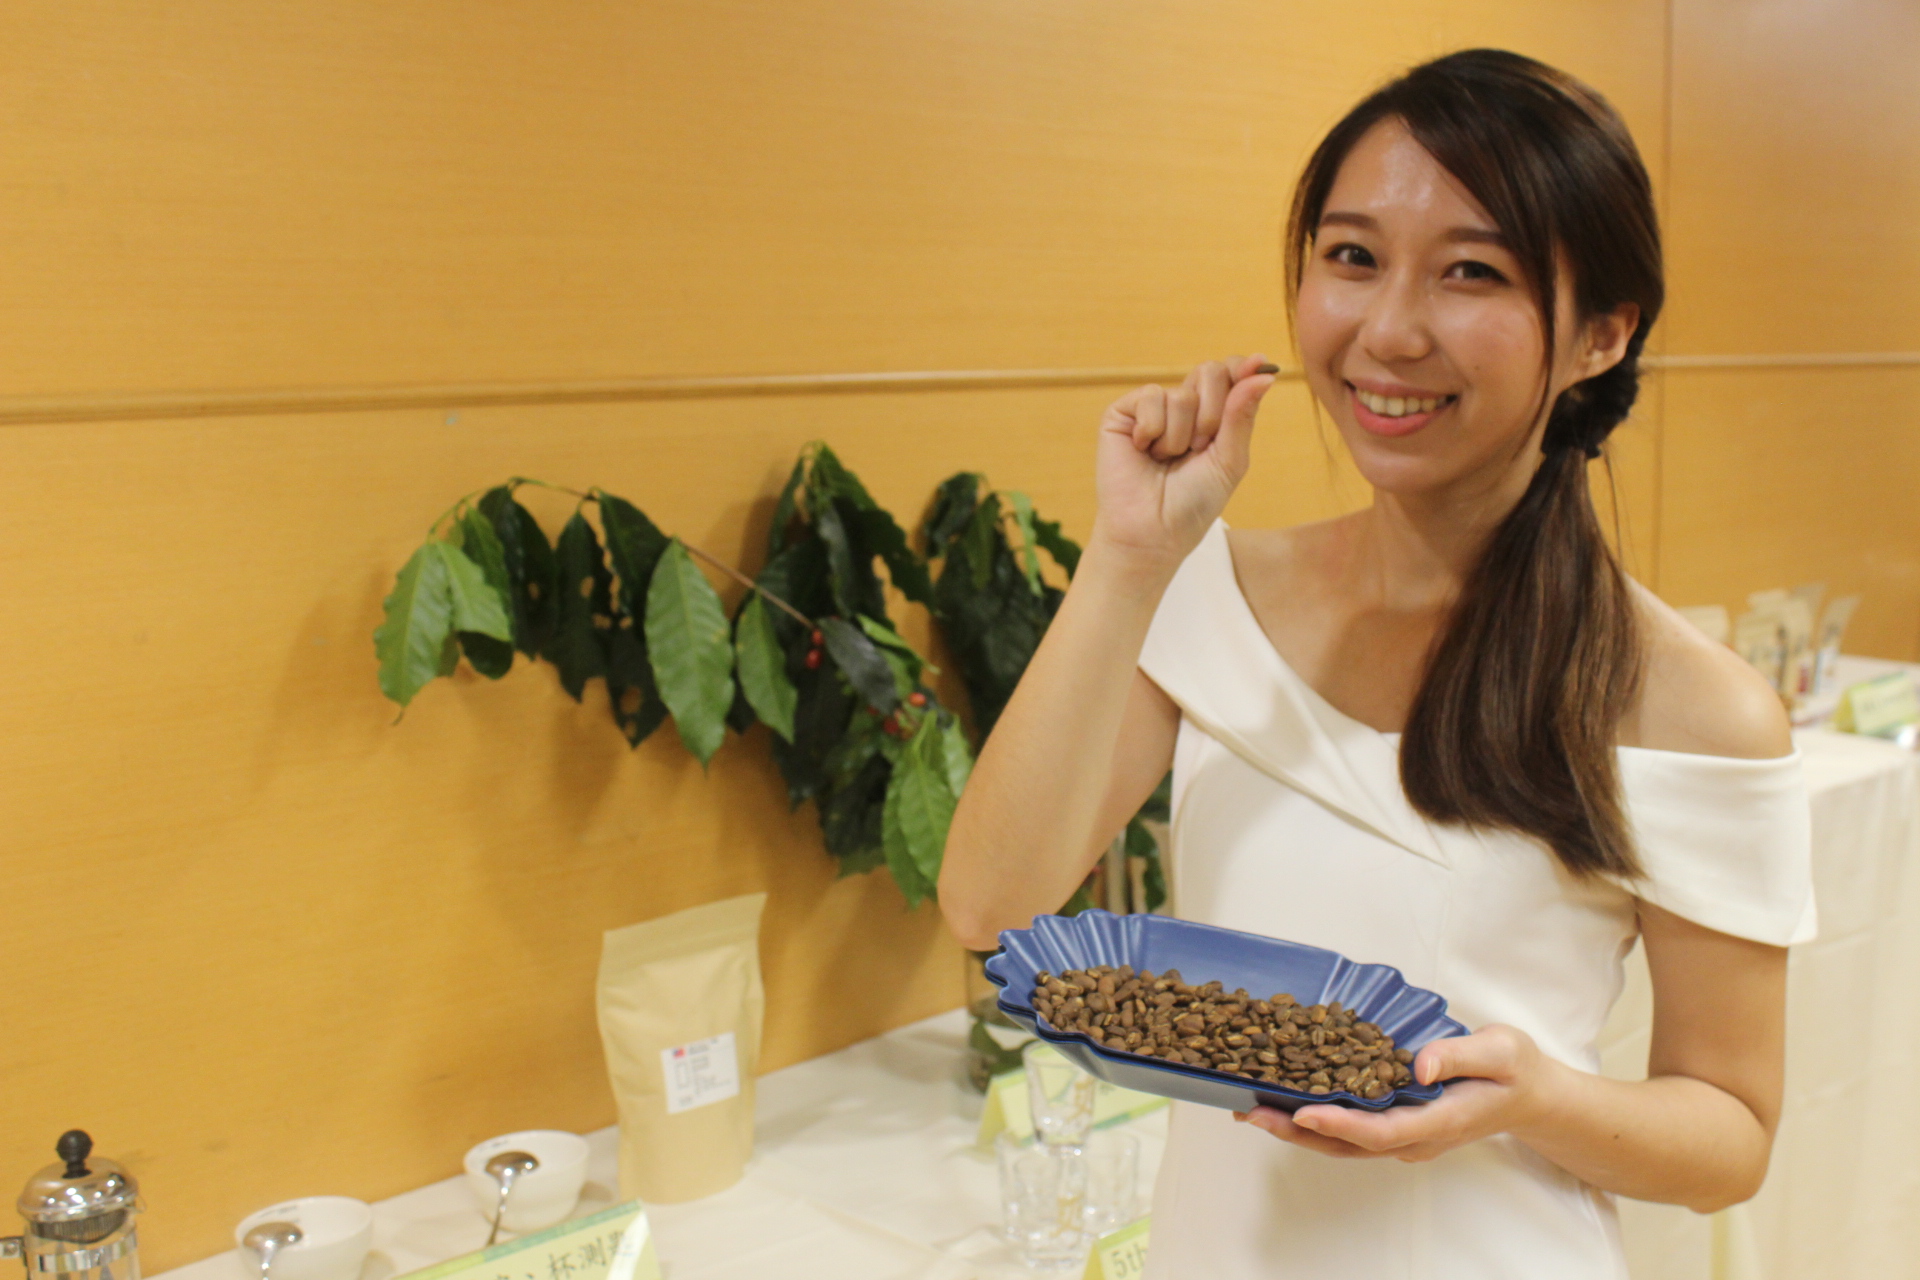 活動當天有來自新北三峽「寶環農場」生產的咖啡豆